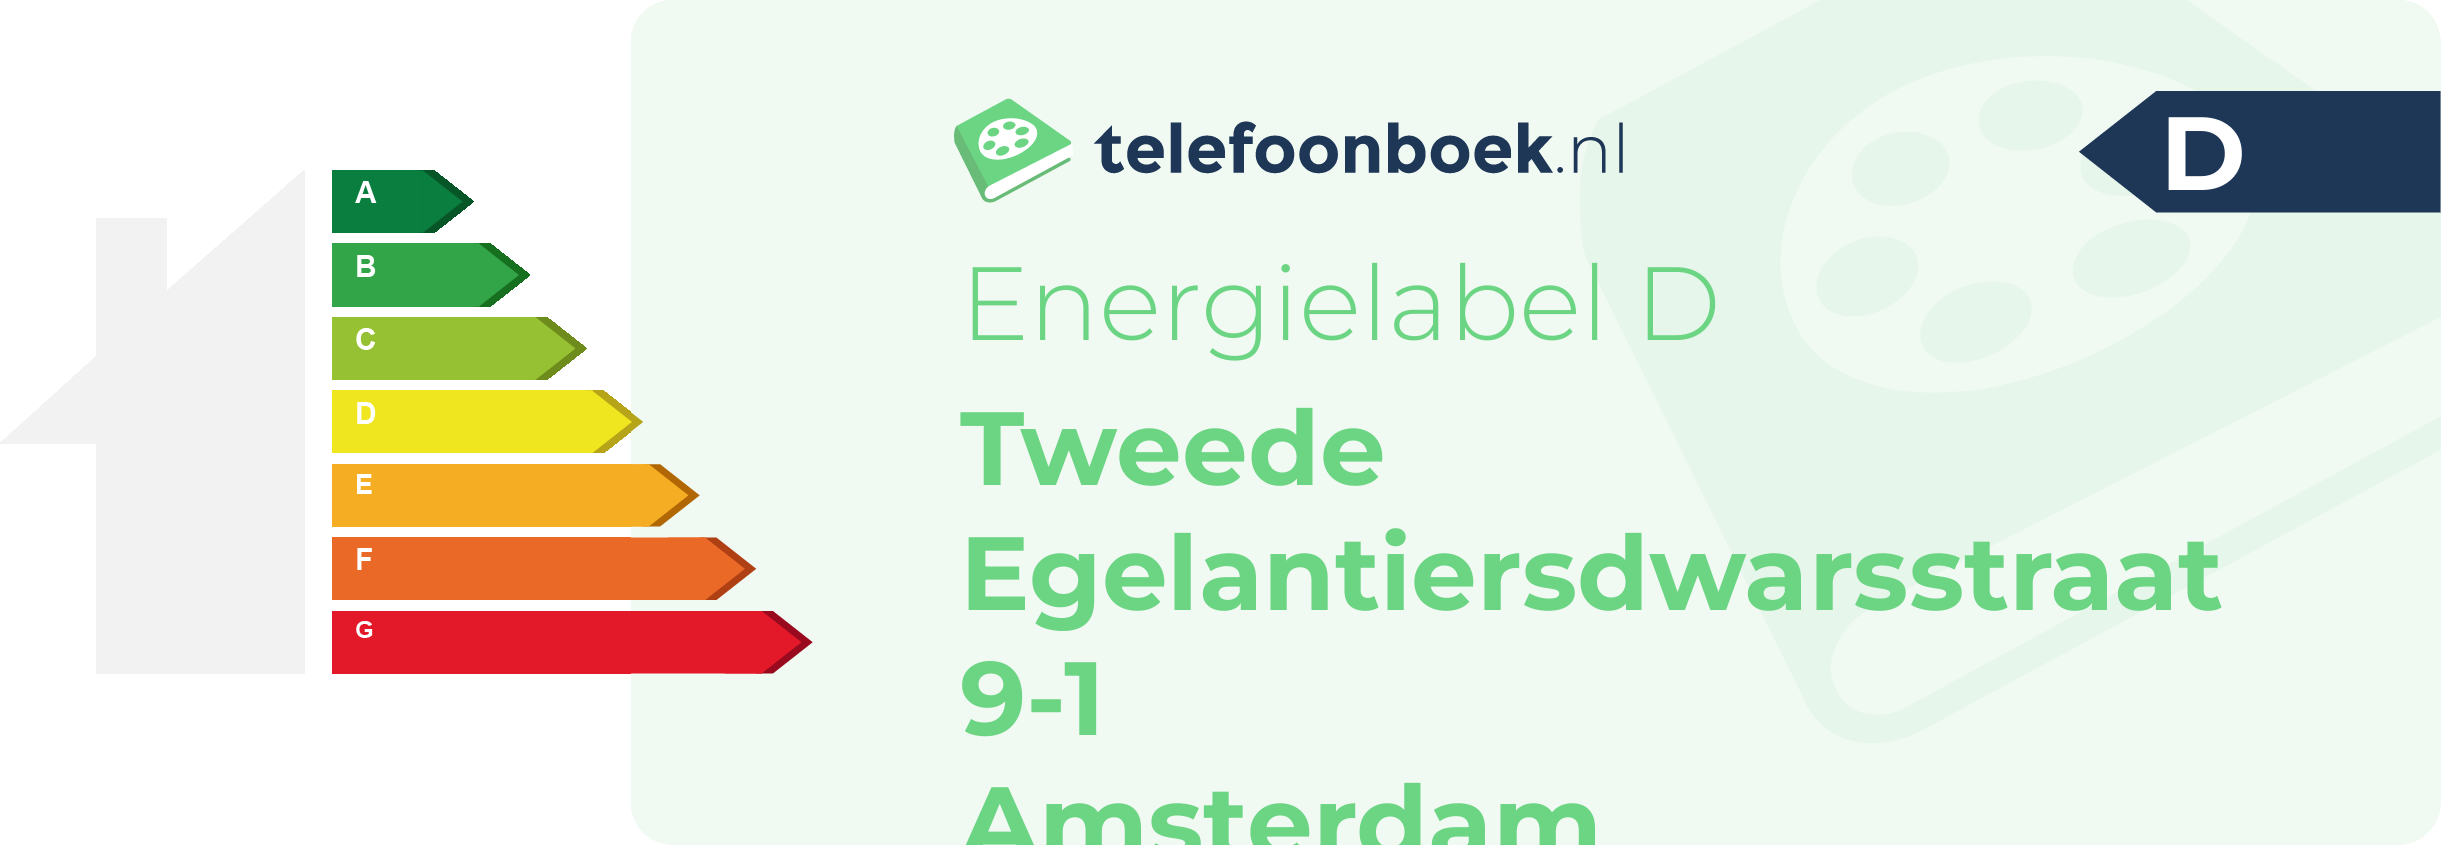 Energielabel Tweede Egelantiersdwarsstraat 9-1 Amsterdam